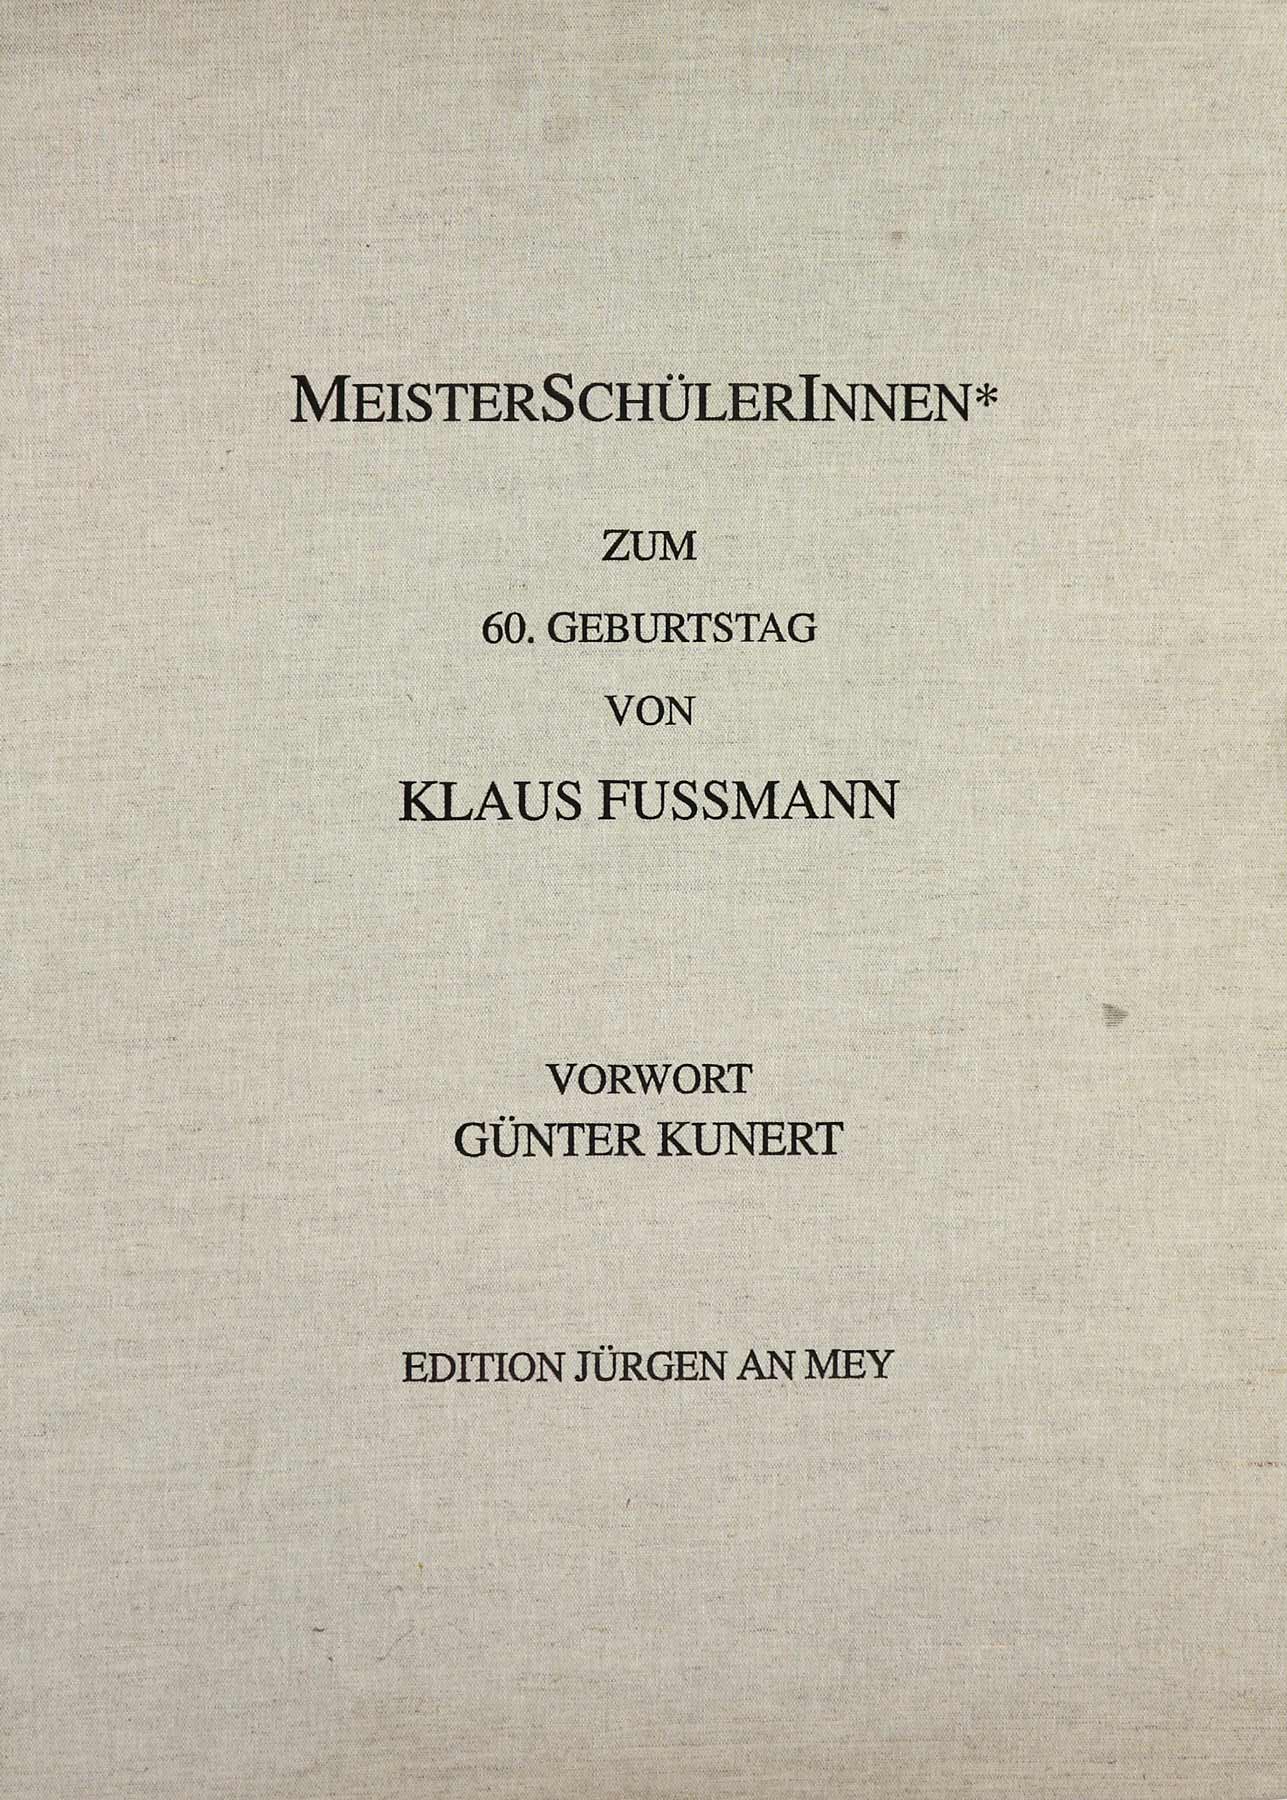 Auktionshaus Quentin Berlin  Künstlergrafik Kassette  MeisterschÃ¼lerInnen* zum 60. Geburtstag von Klaus Fussmann